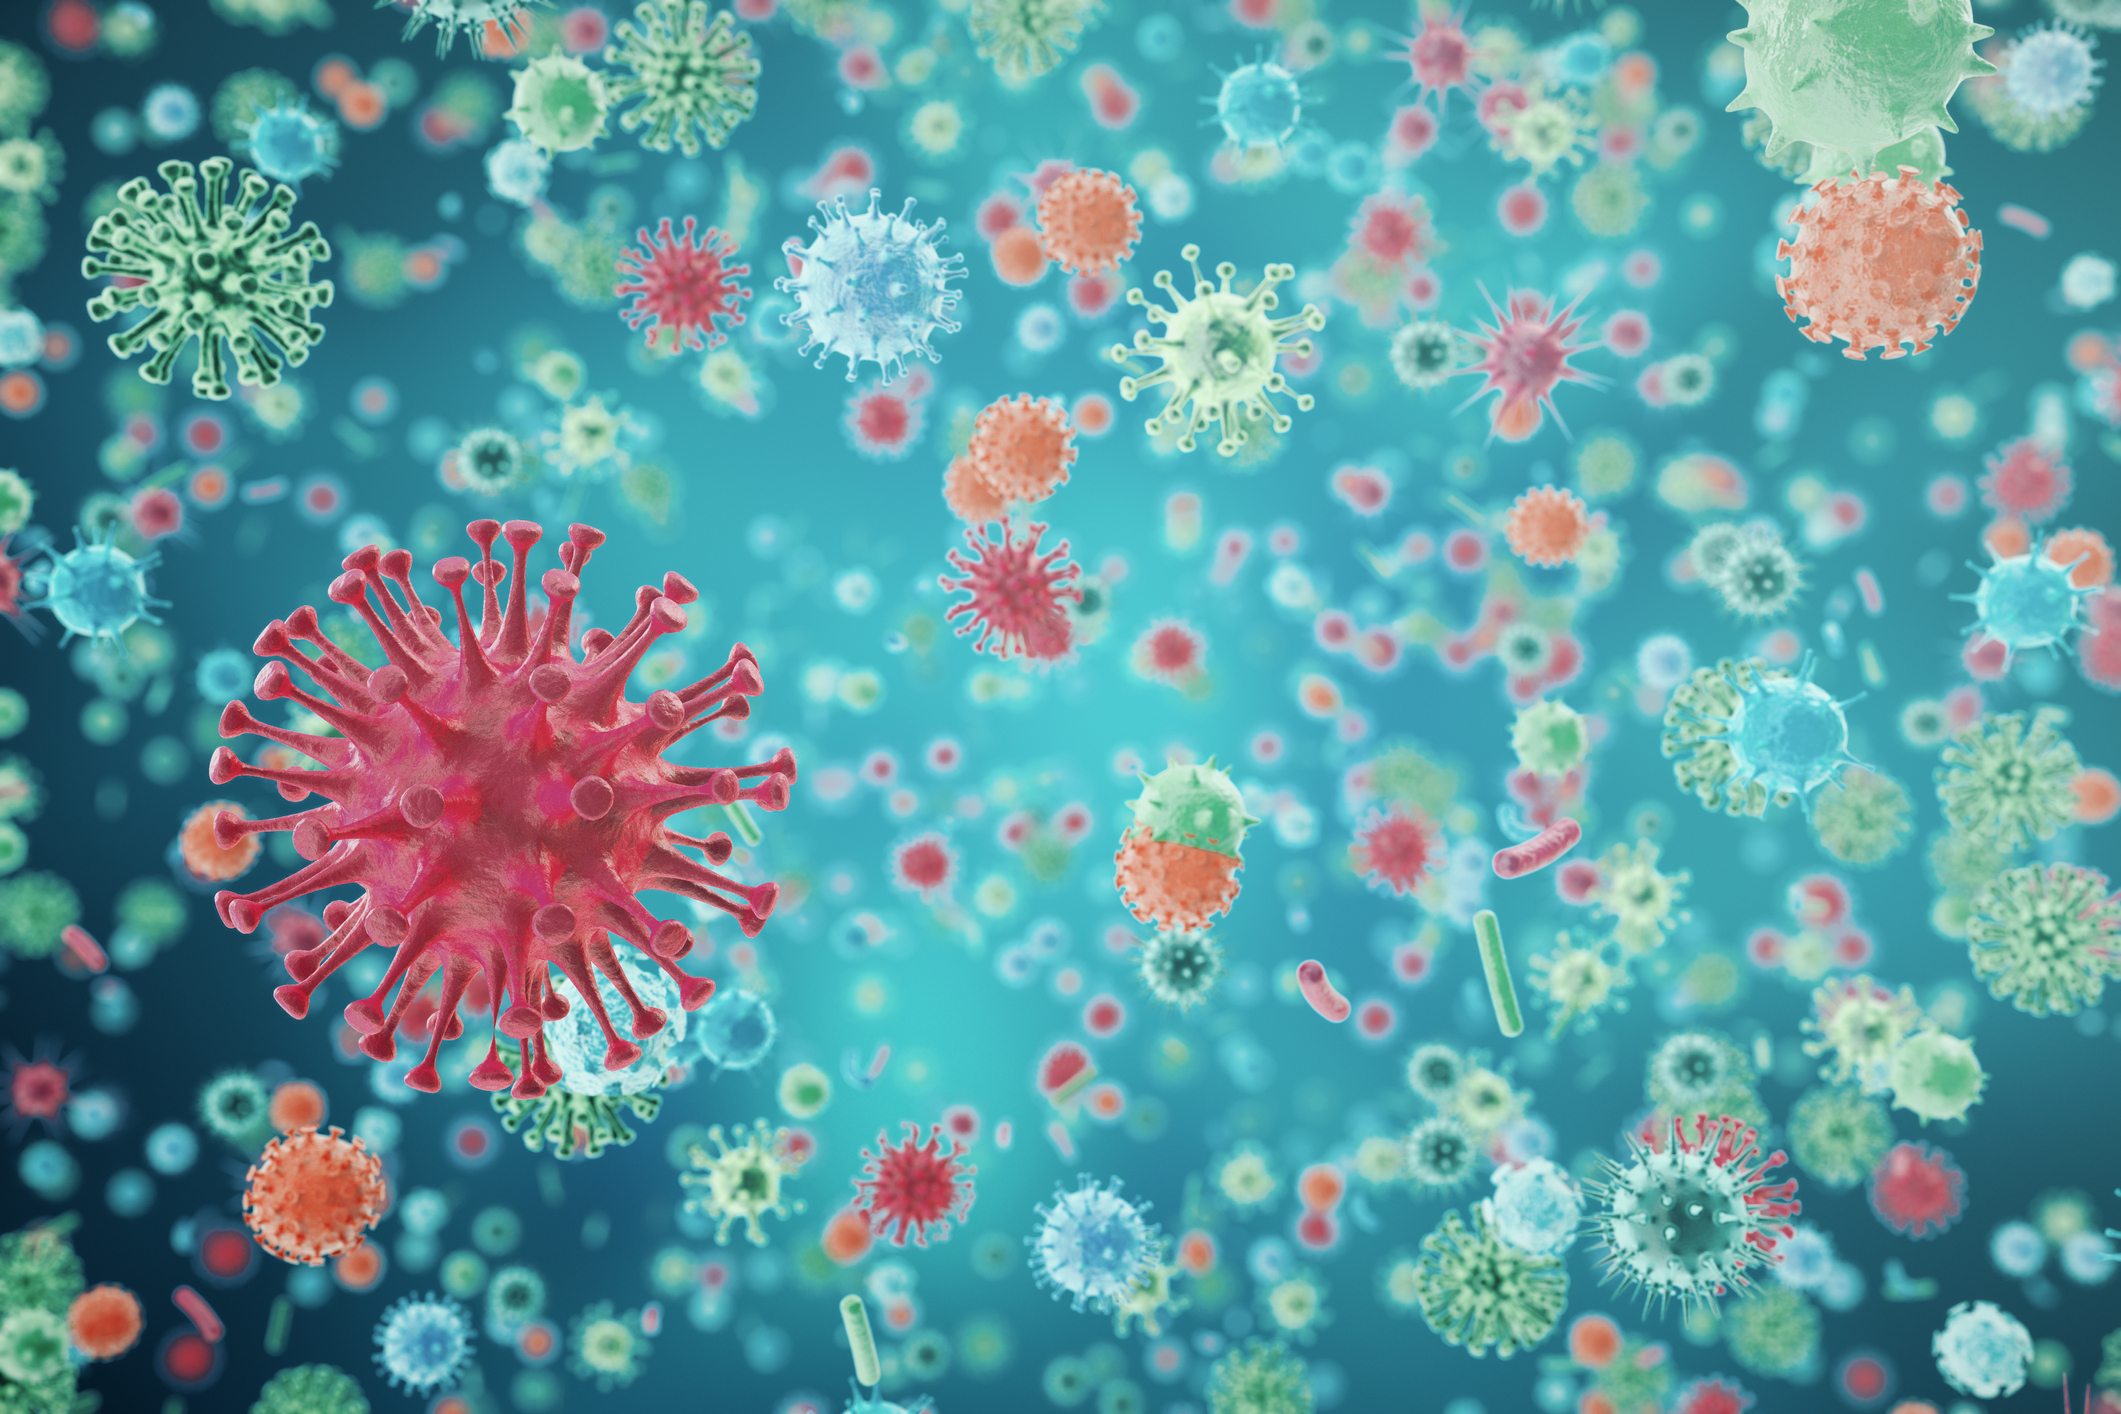 Viruses in infected organism, viral disease epidemic, virus abstract background. 3d rendering.